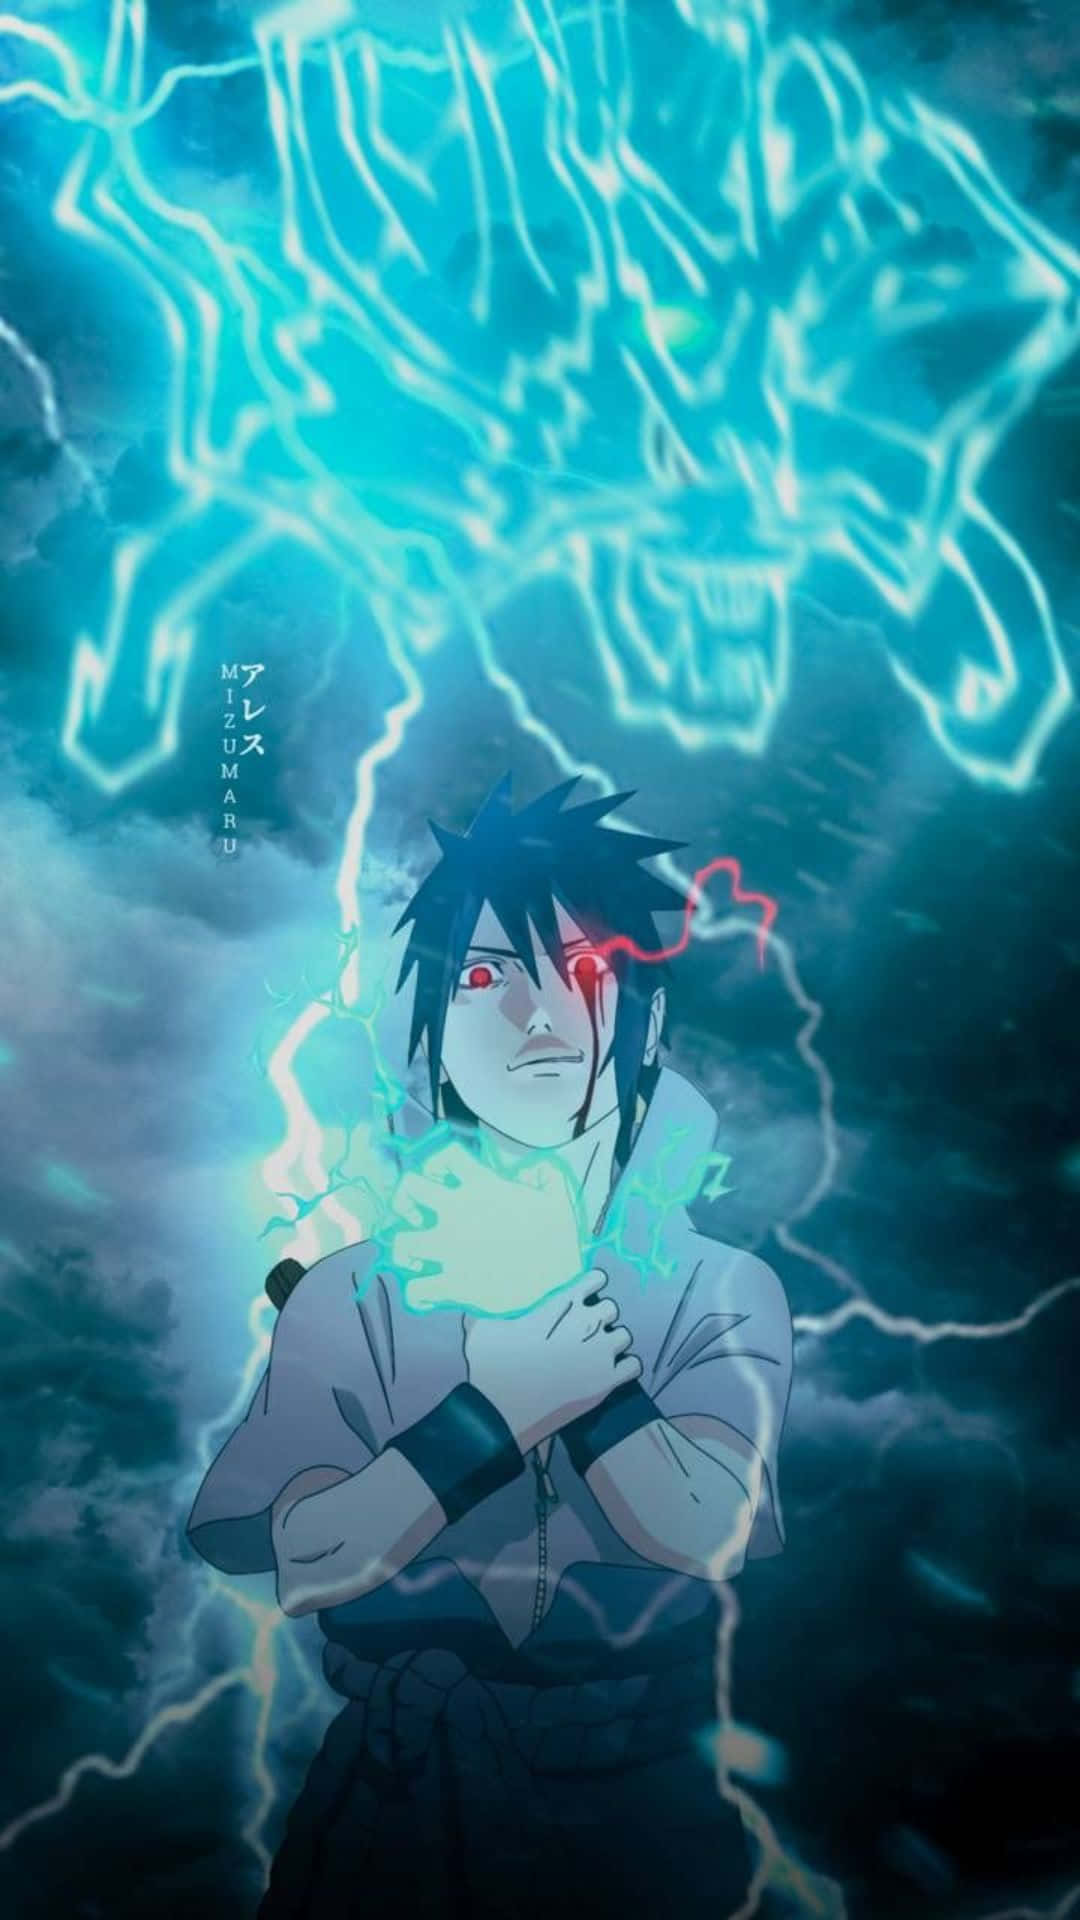 Uzumakinaruto Och Uchiha Sasuke I All Sin Blå Prakt. Wallpaper